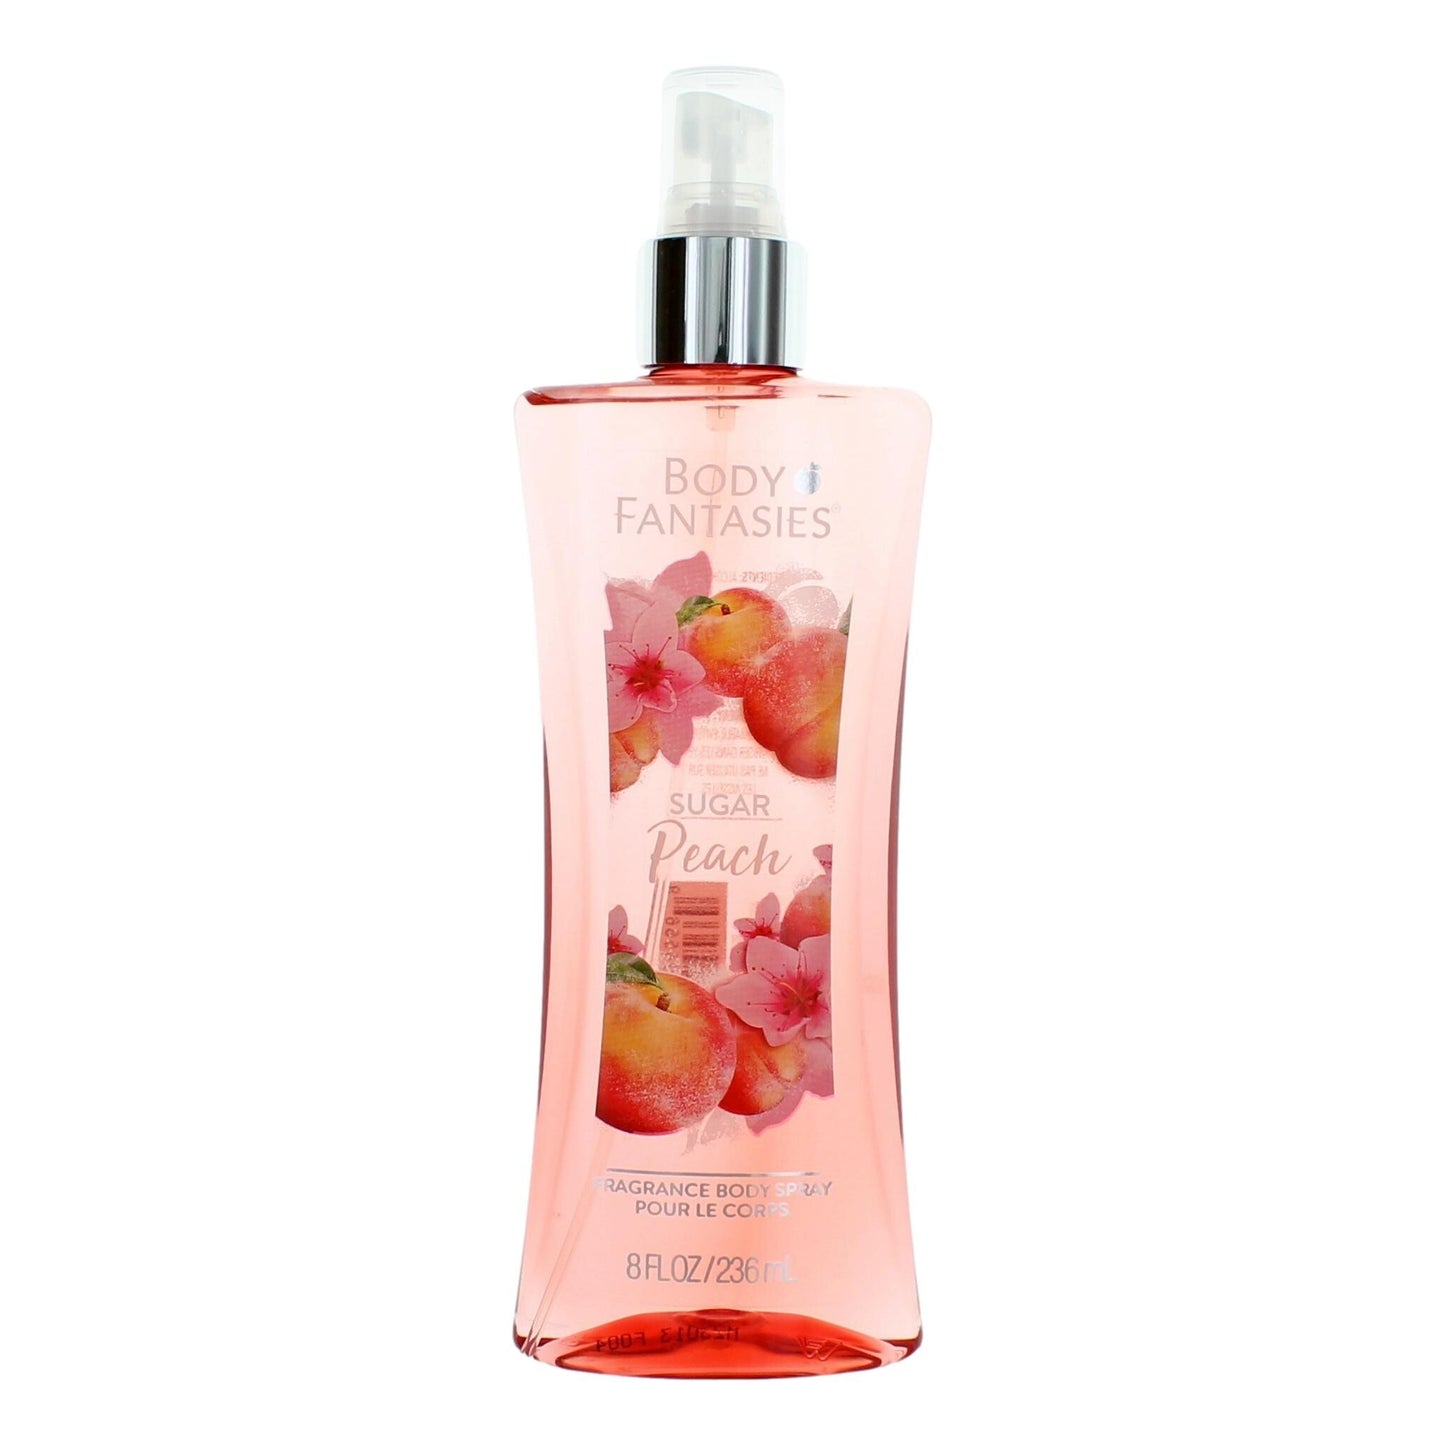 Sugar Peach by Body Fantasies, 8 oz Fragrance Body Spray for Women